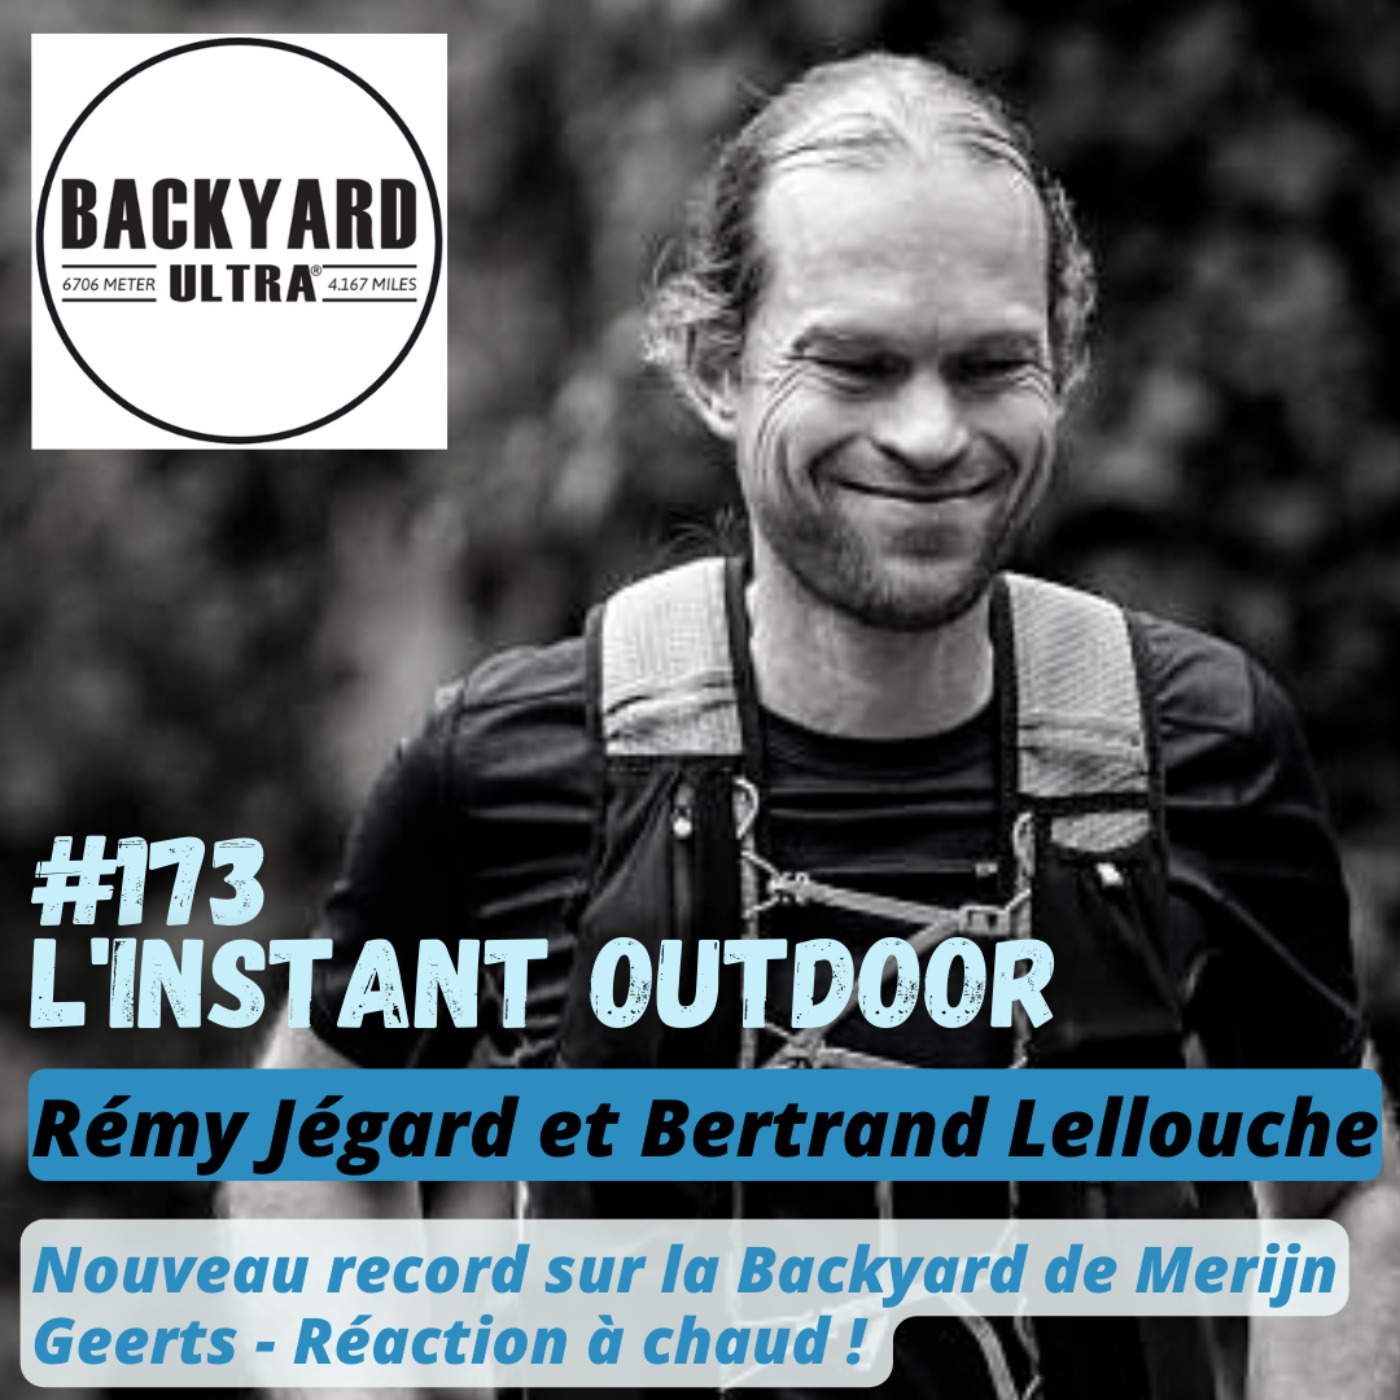 Record battu sur la Backyard réaction de Rémy Jégard et Bertrand Lellouche